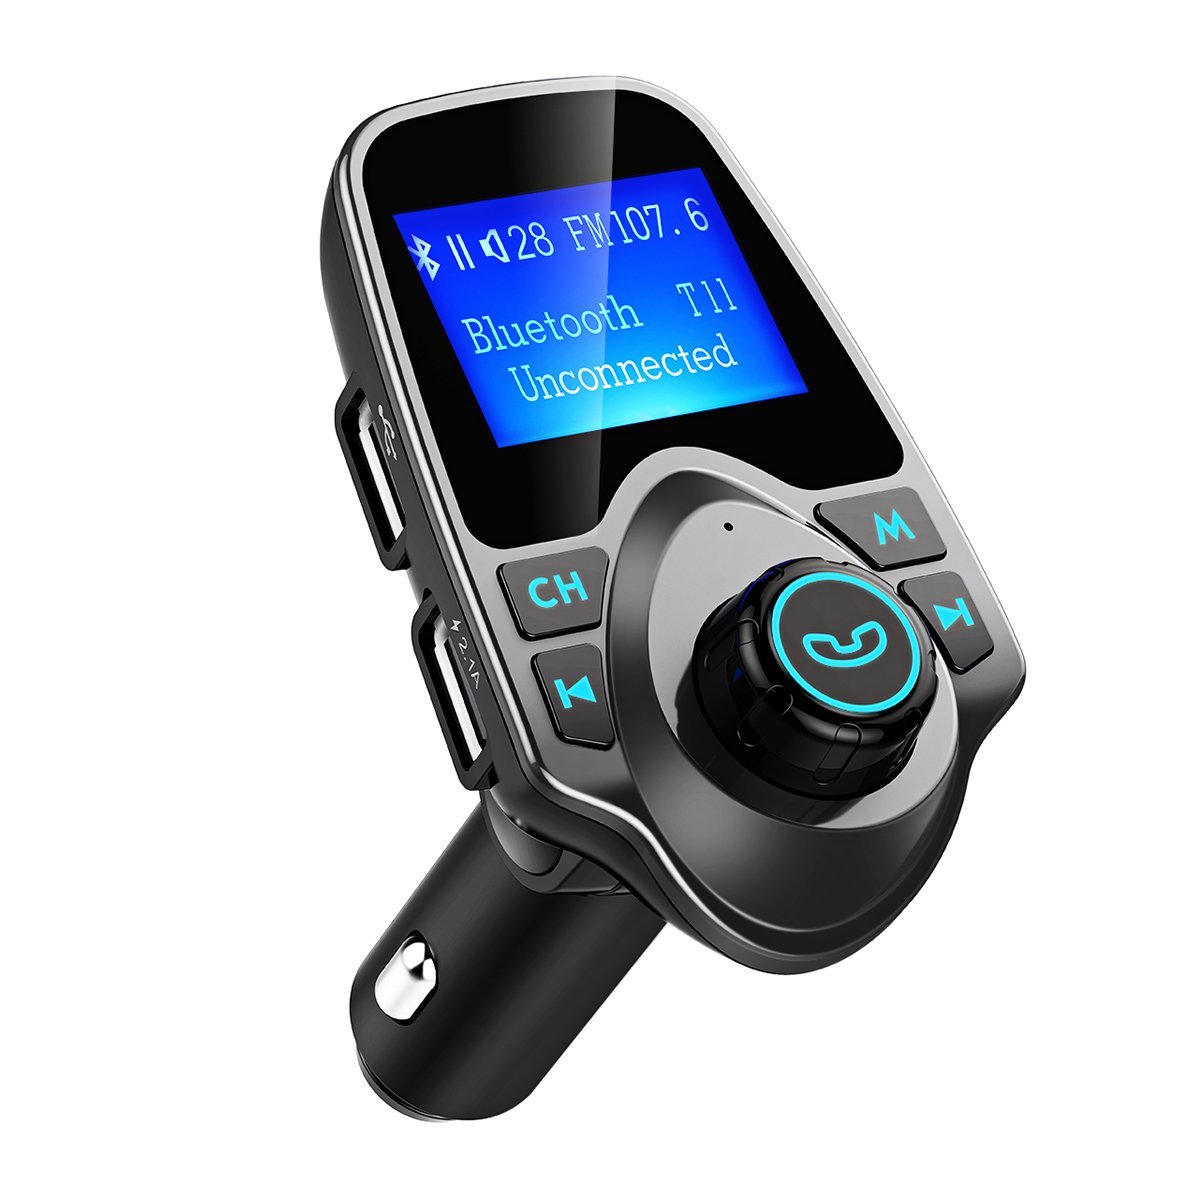 Radio Bluetooth y FM para conectar el iPhone a un coche